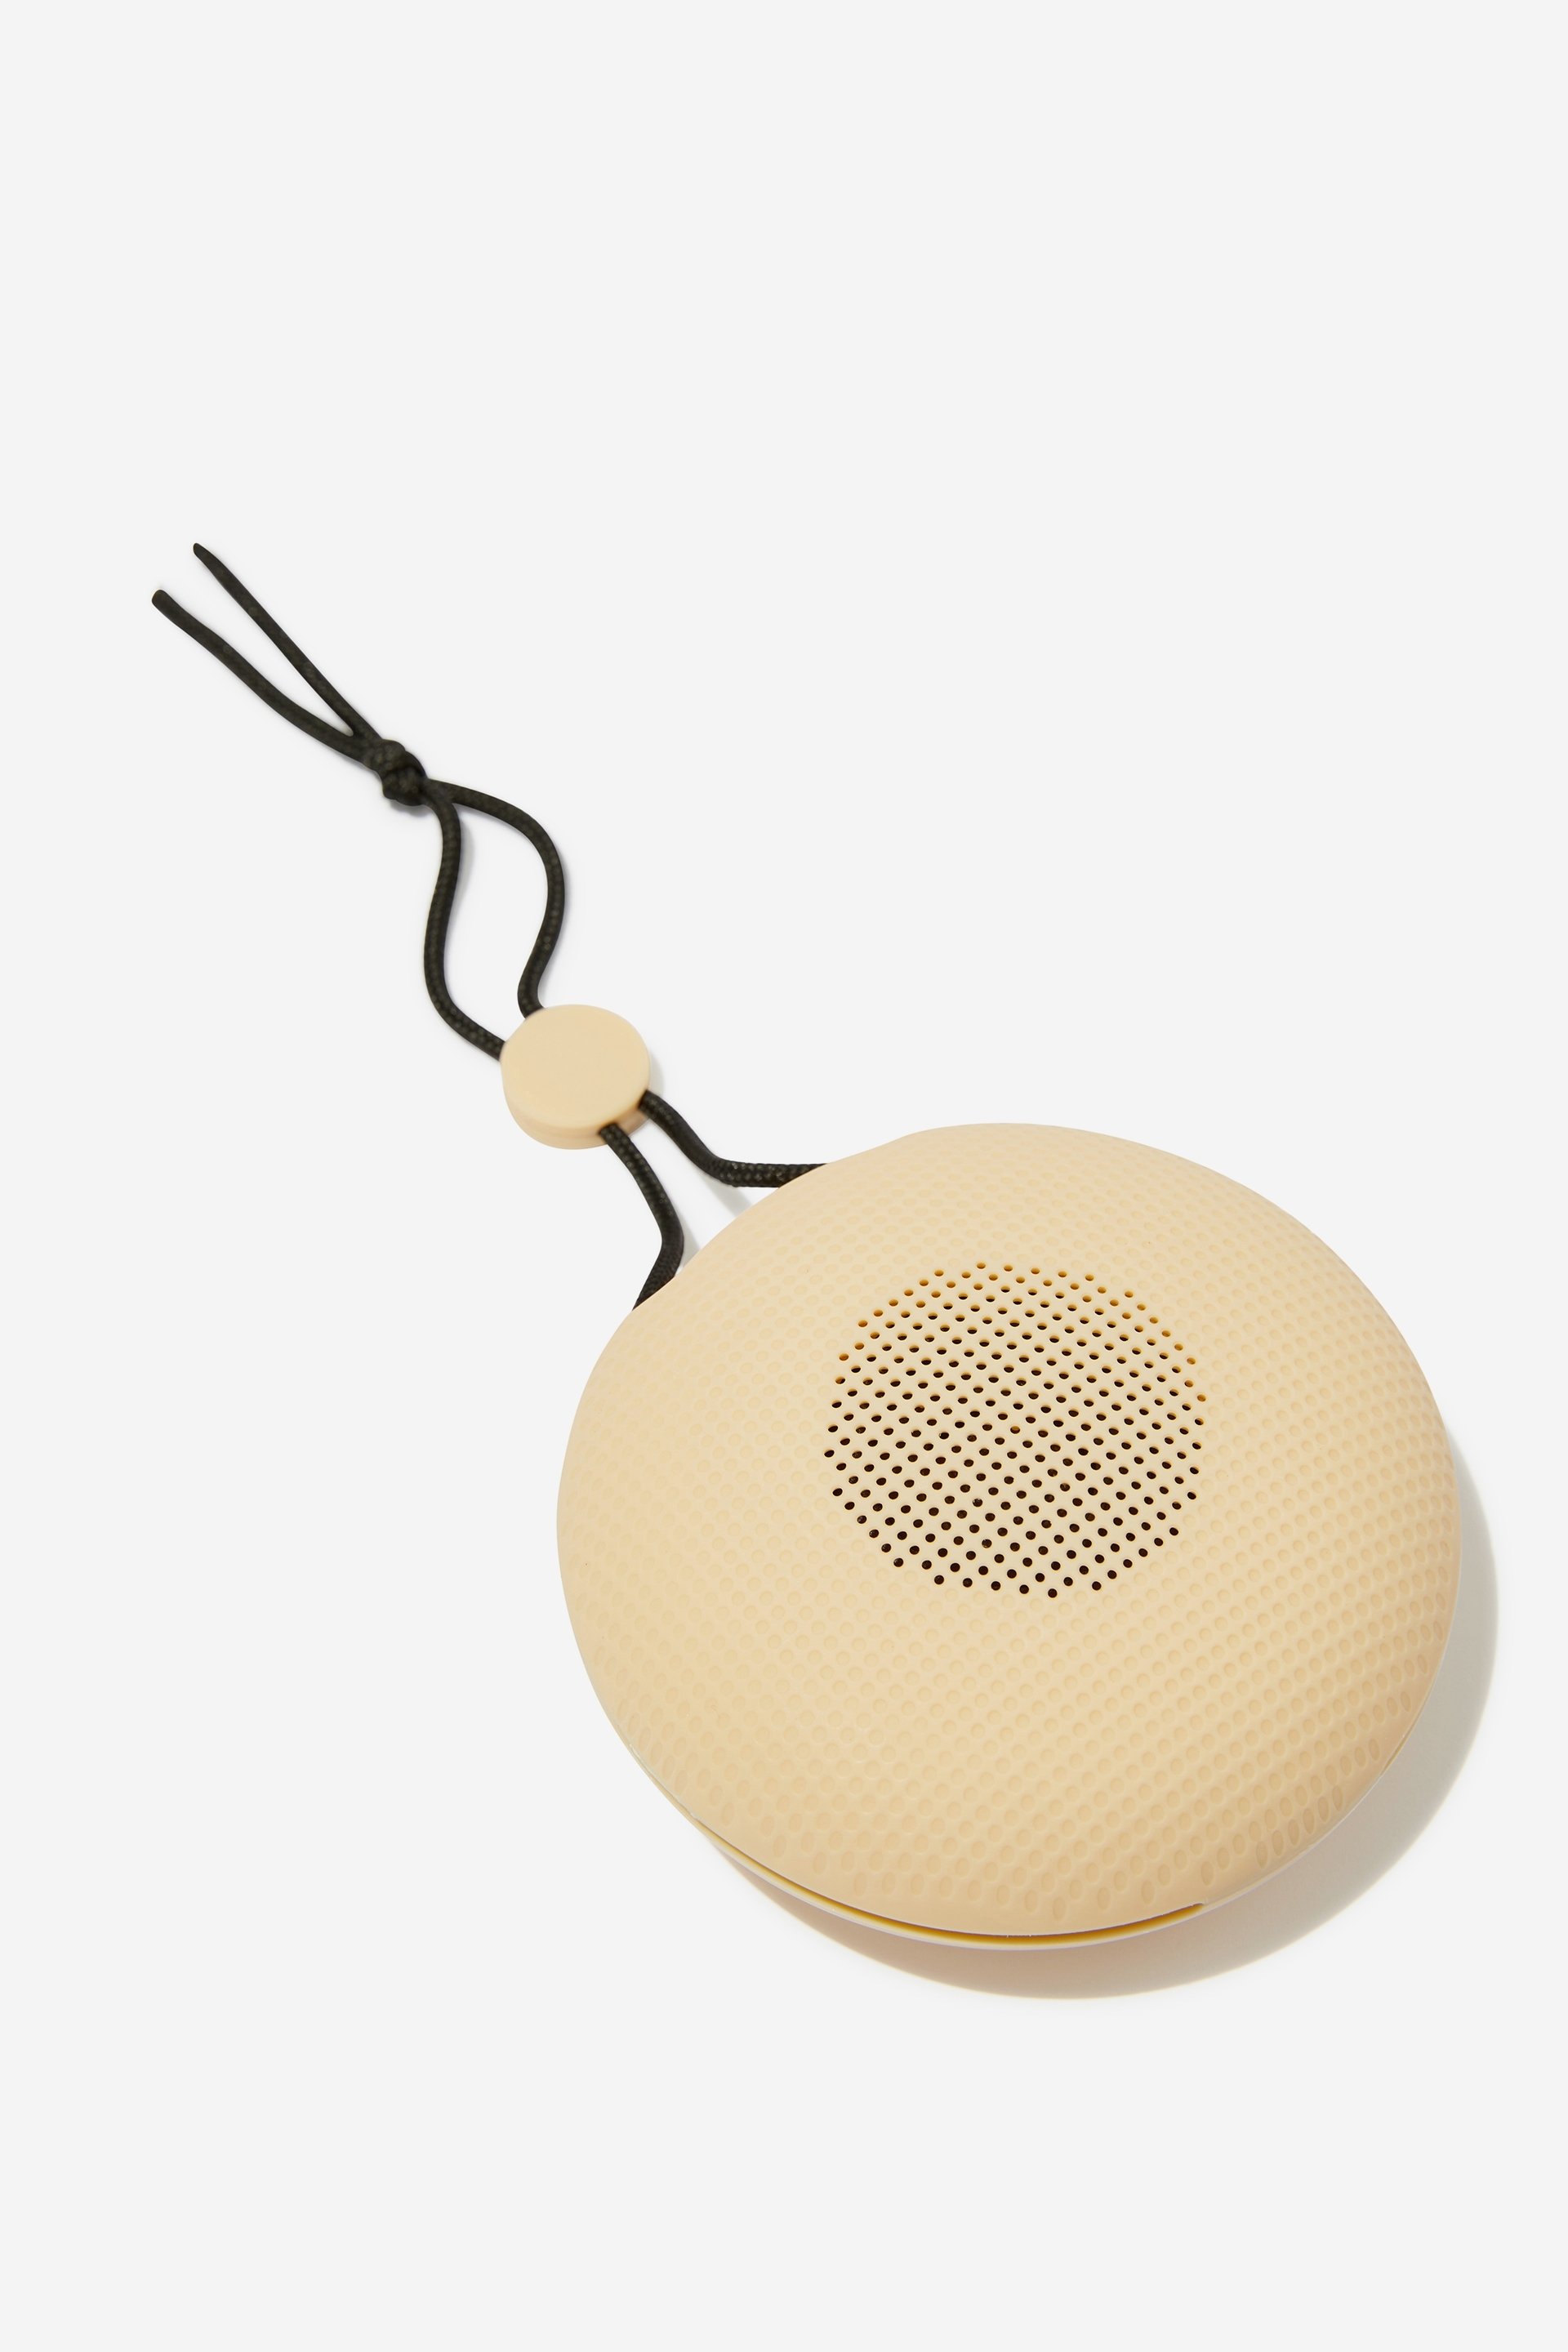 Typo - Soundvibe Waterproof Wireless Speaker - Latte